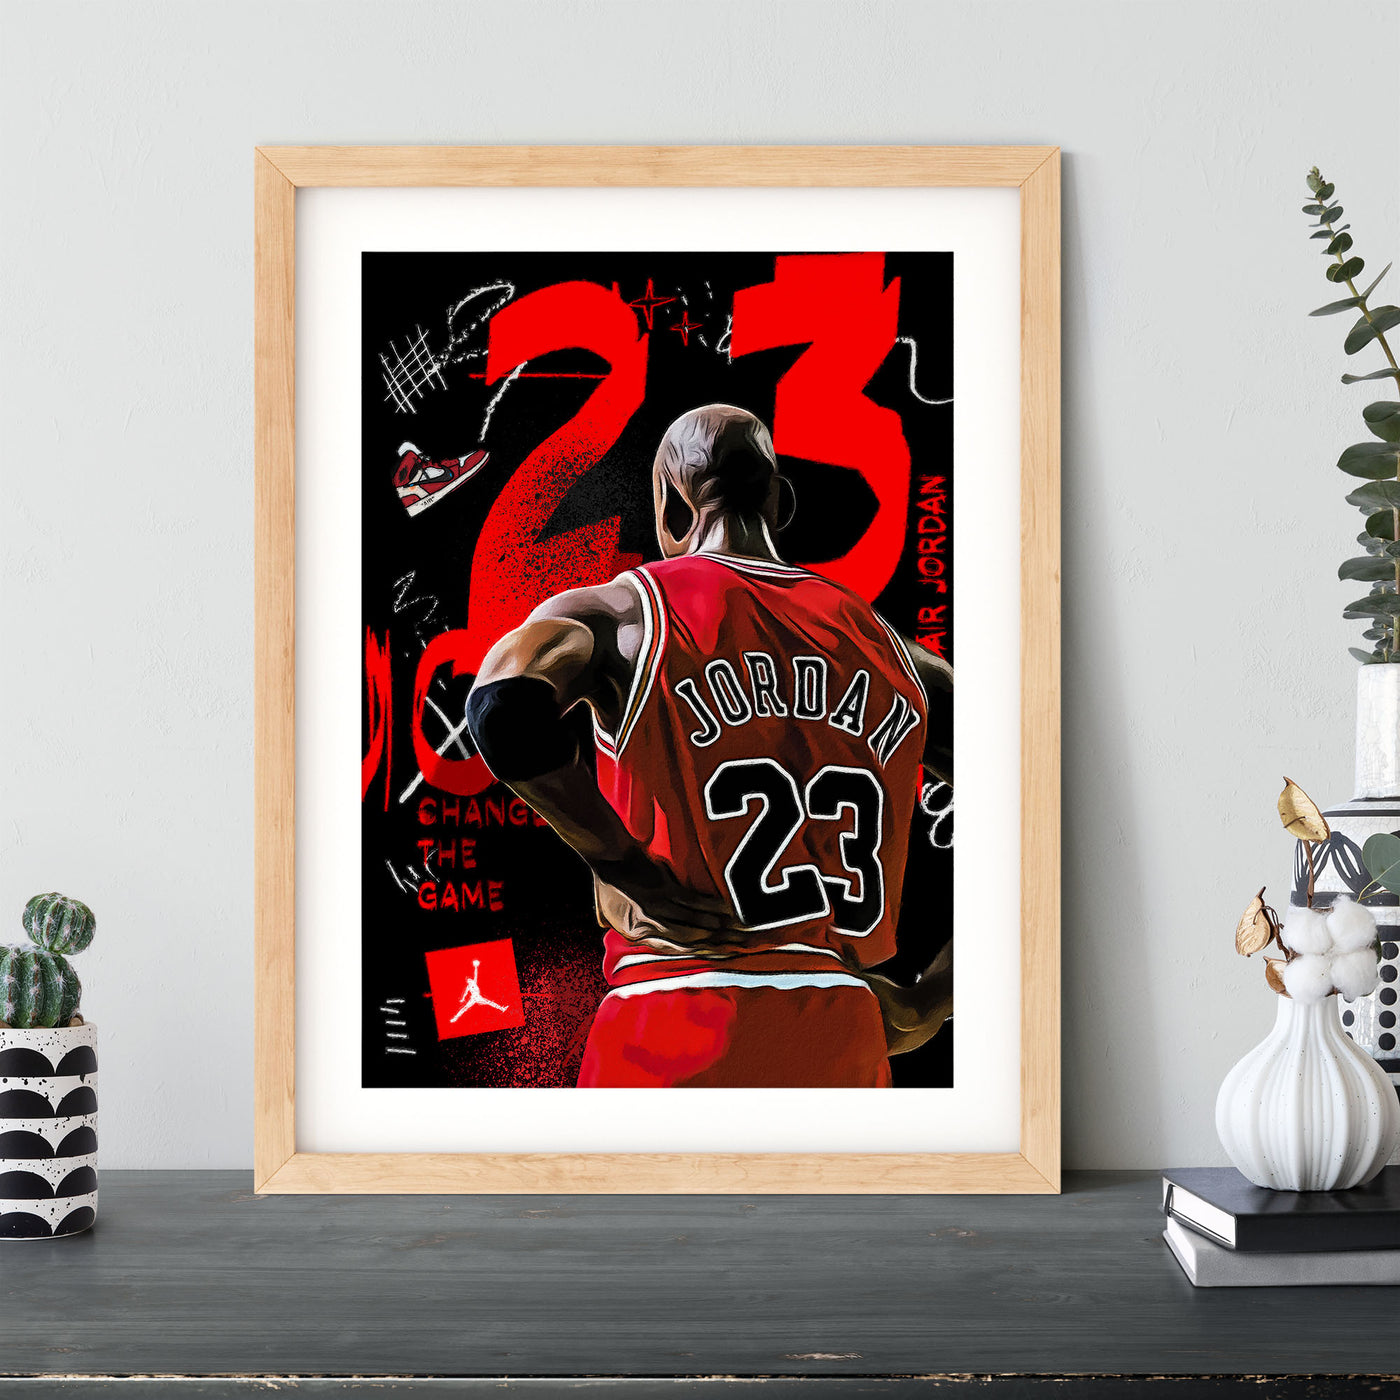 Michael Jordan - Air Jordan Pop Art #7